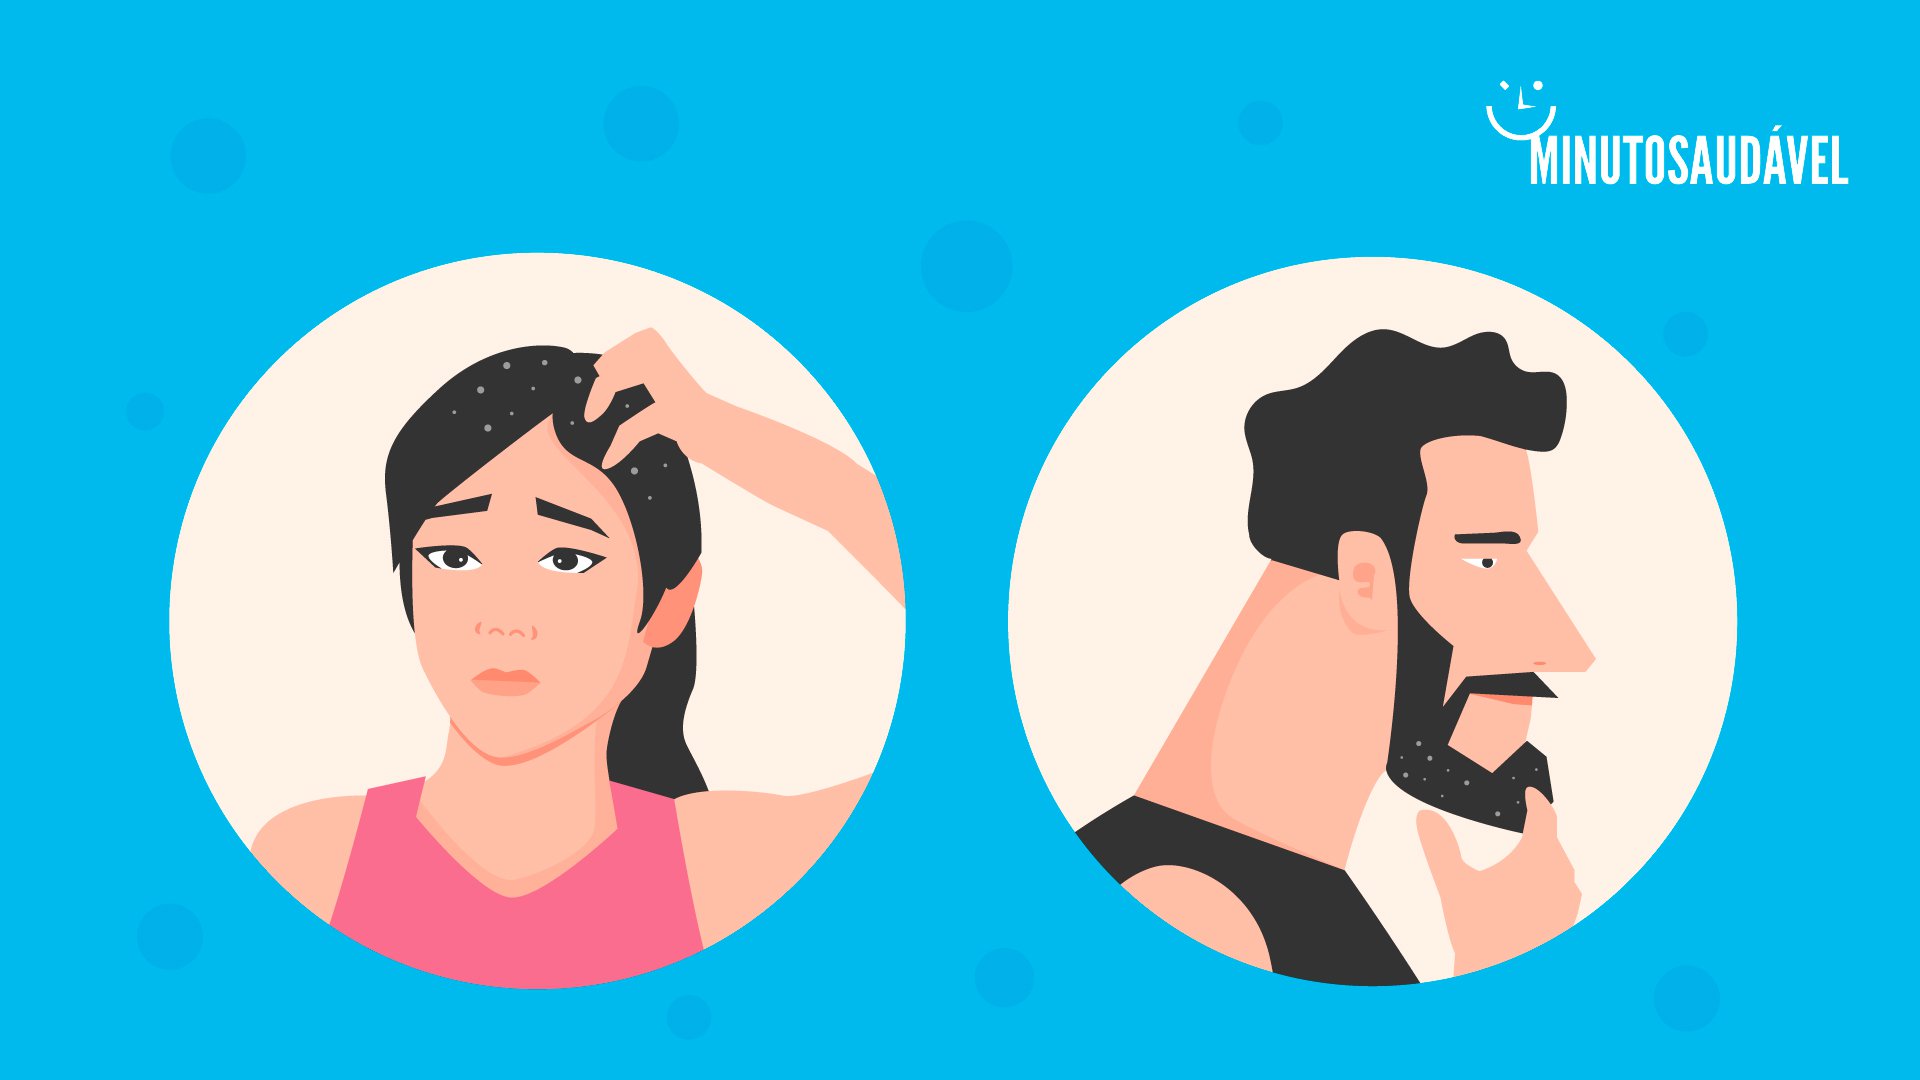 Foto de capa do artigo "Como acabar com a caspa: do cabelo cacheado à barba"